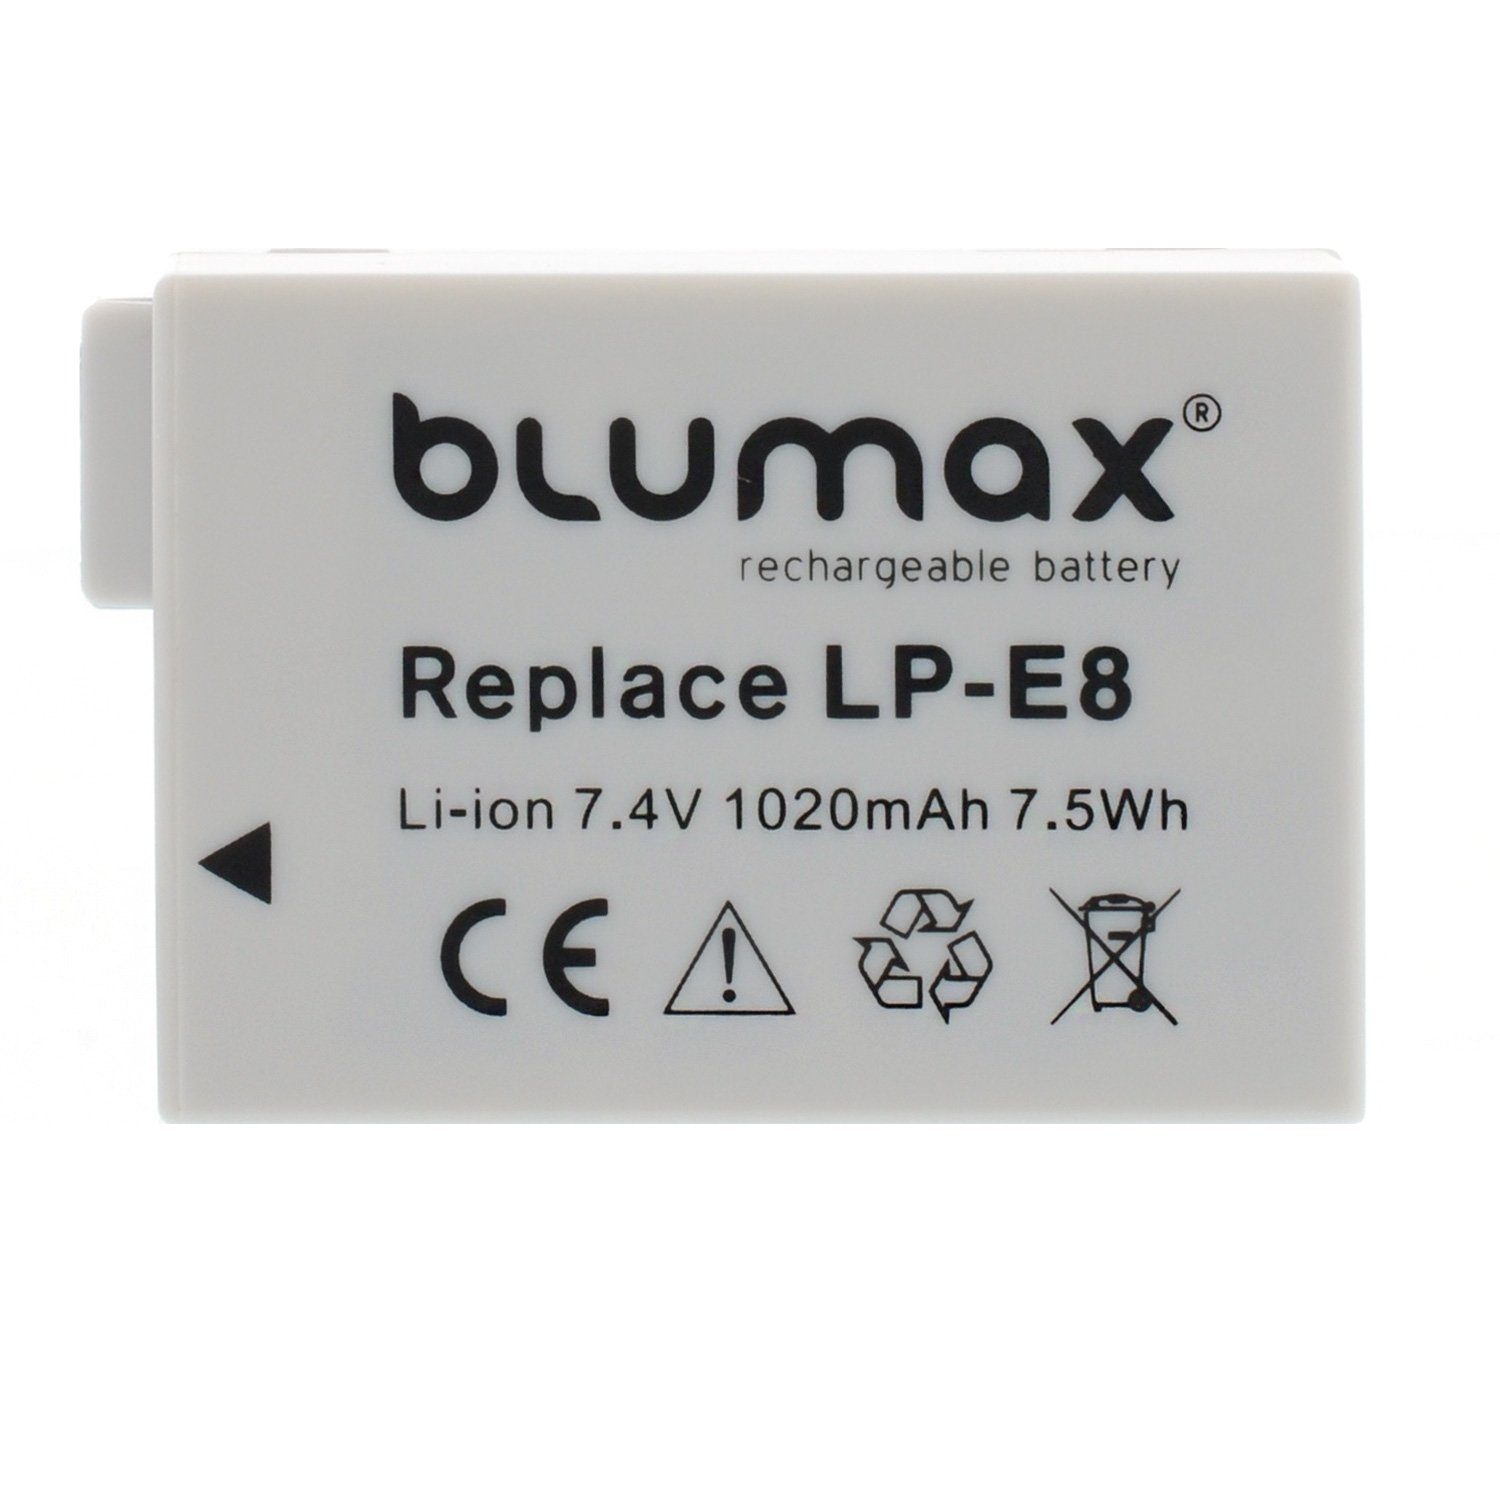 Blumax 2x Kamera-Akku 550D EOS 1020 700D 650D Rebel T3i mAh LP-E8